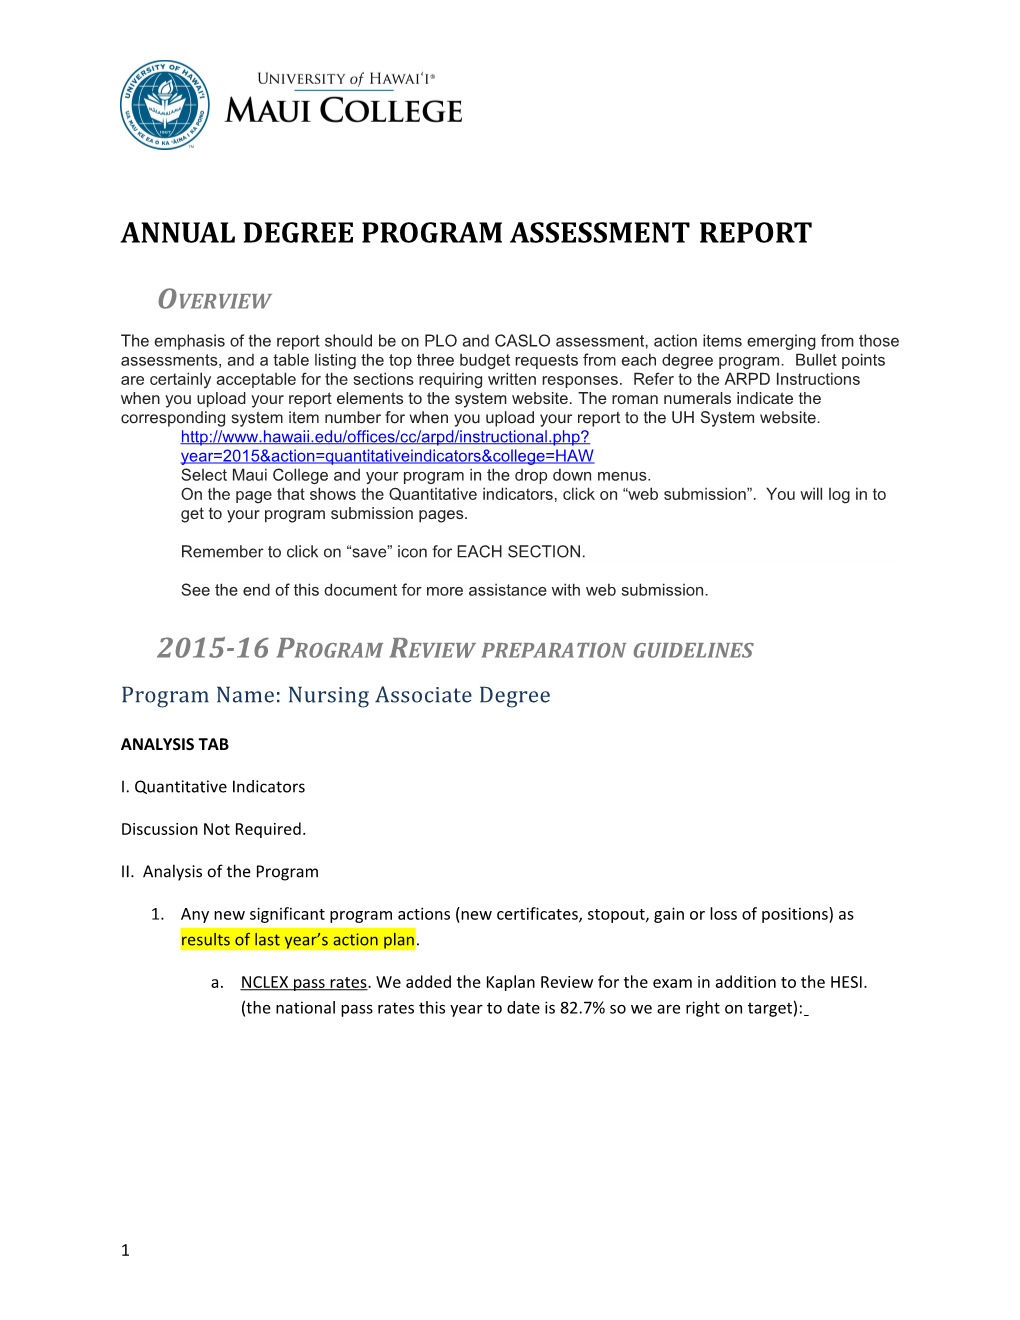 Annual Degree Program Assessmentreport